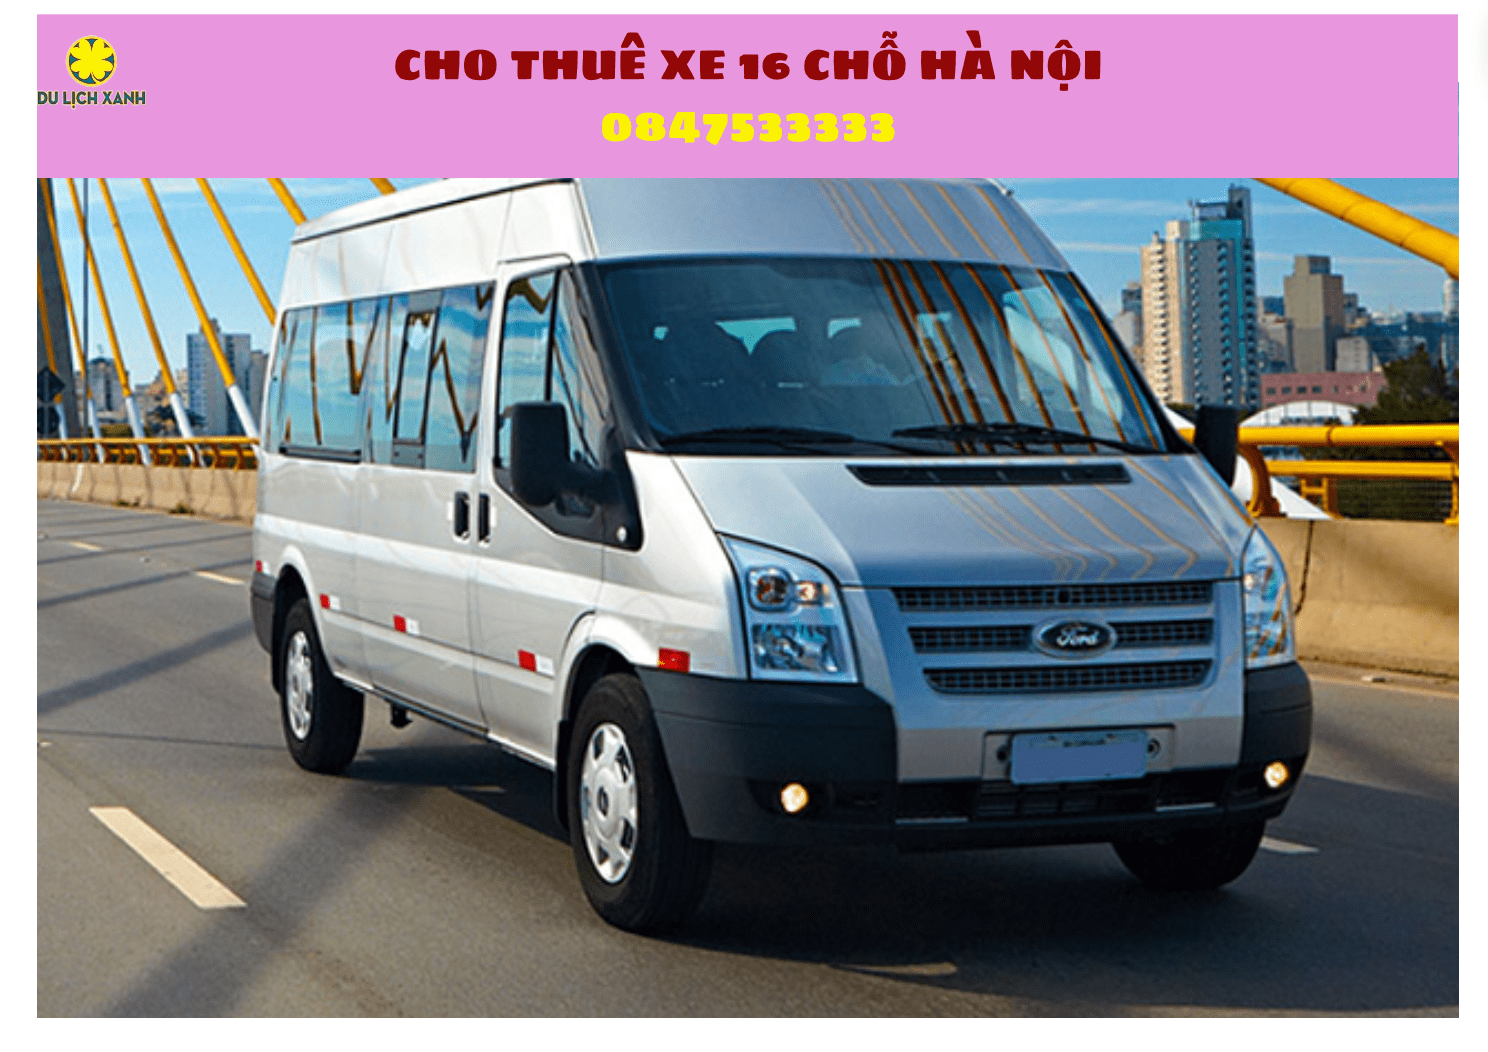 Cho thuê xe du lịch 16 chỗ tại Hà Nội nhanh chóng